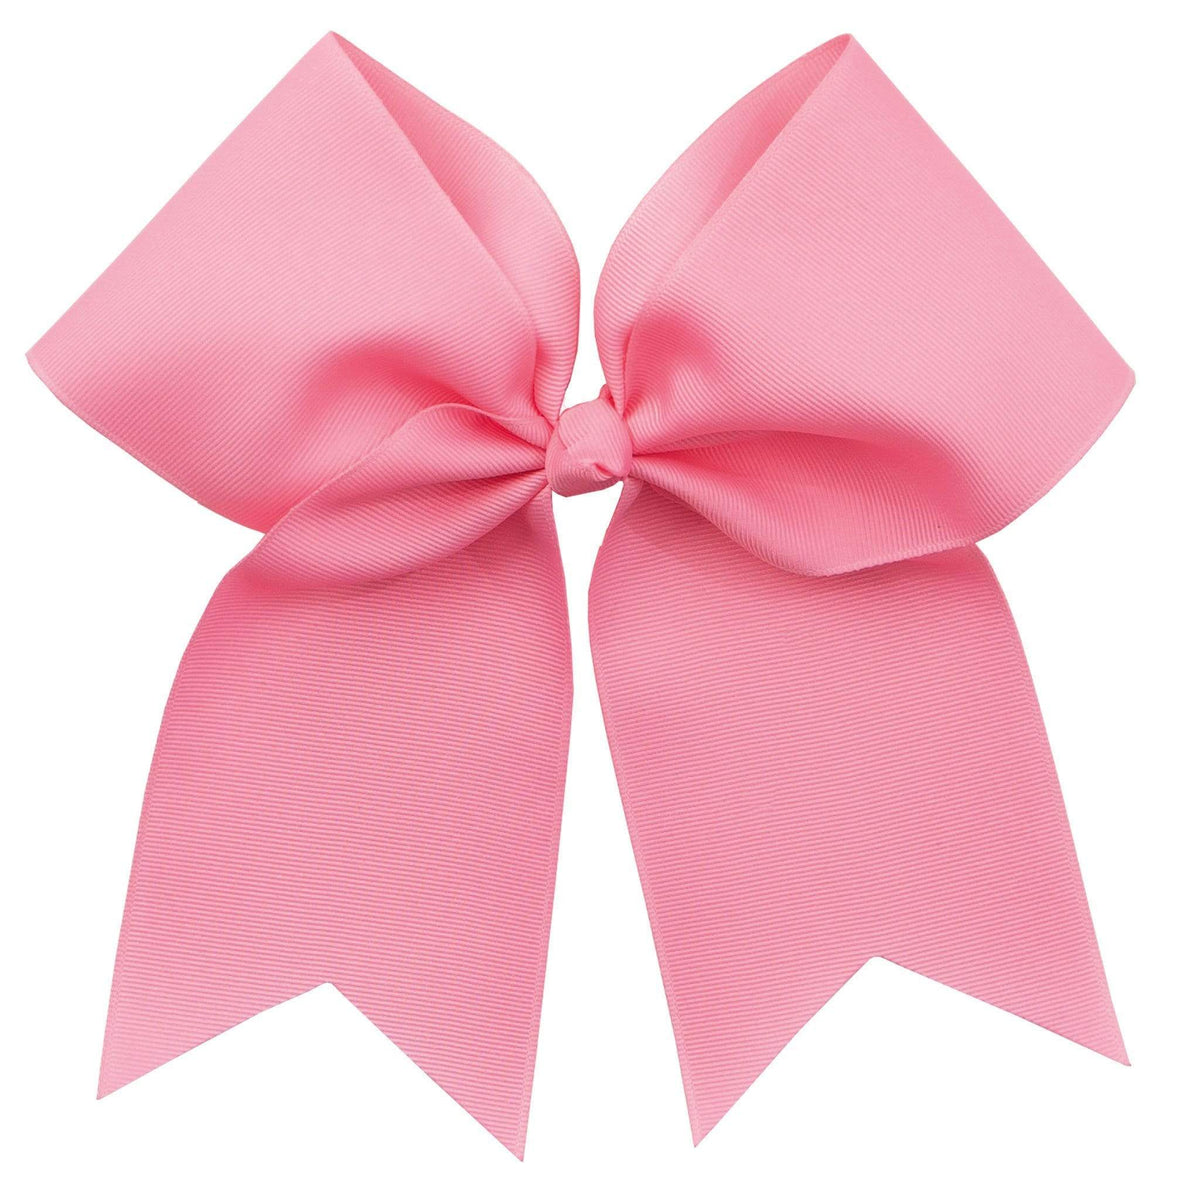 Pink Bow Ribbon